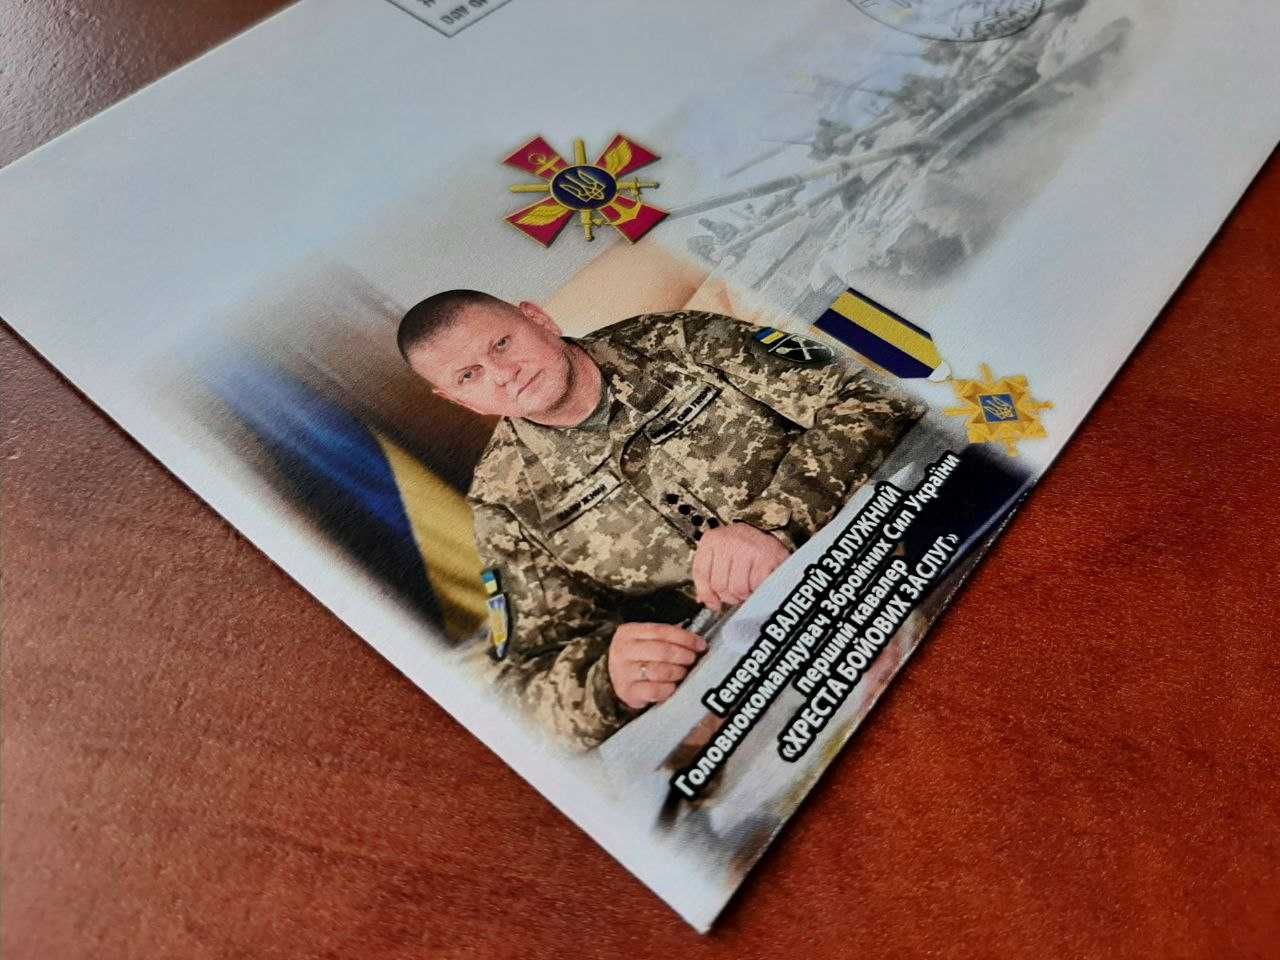 Конверт "Генерал Валерій Залужний", власна марка Хрест бойових заслуг